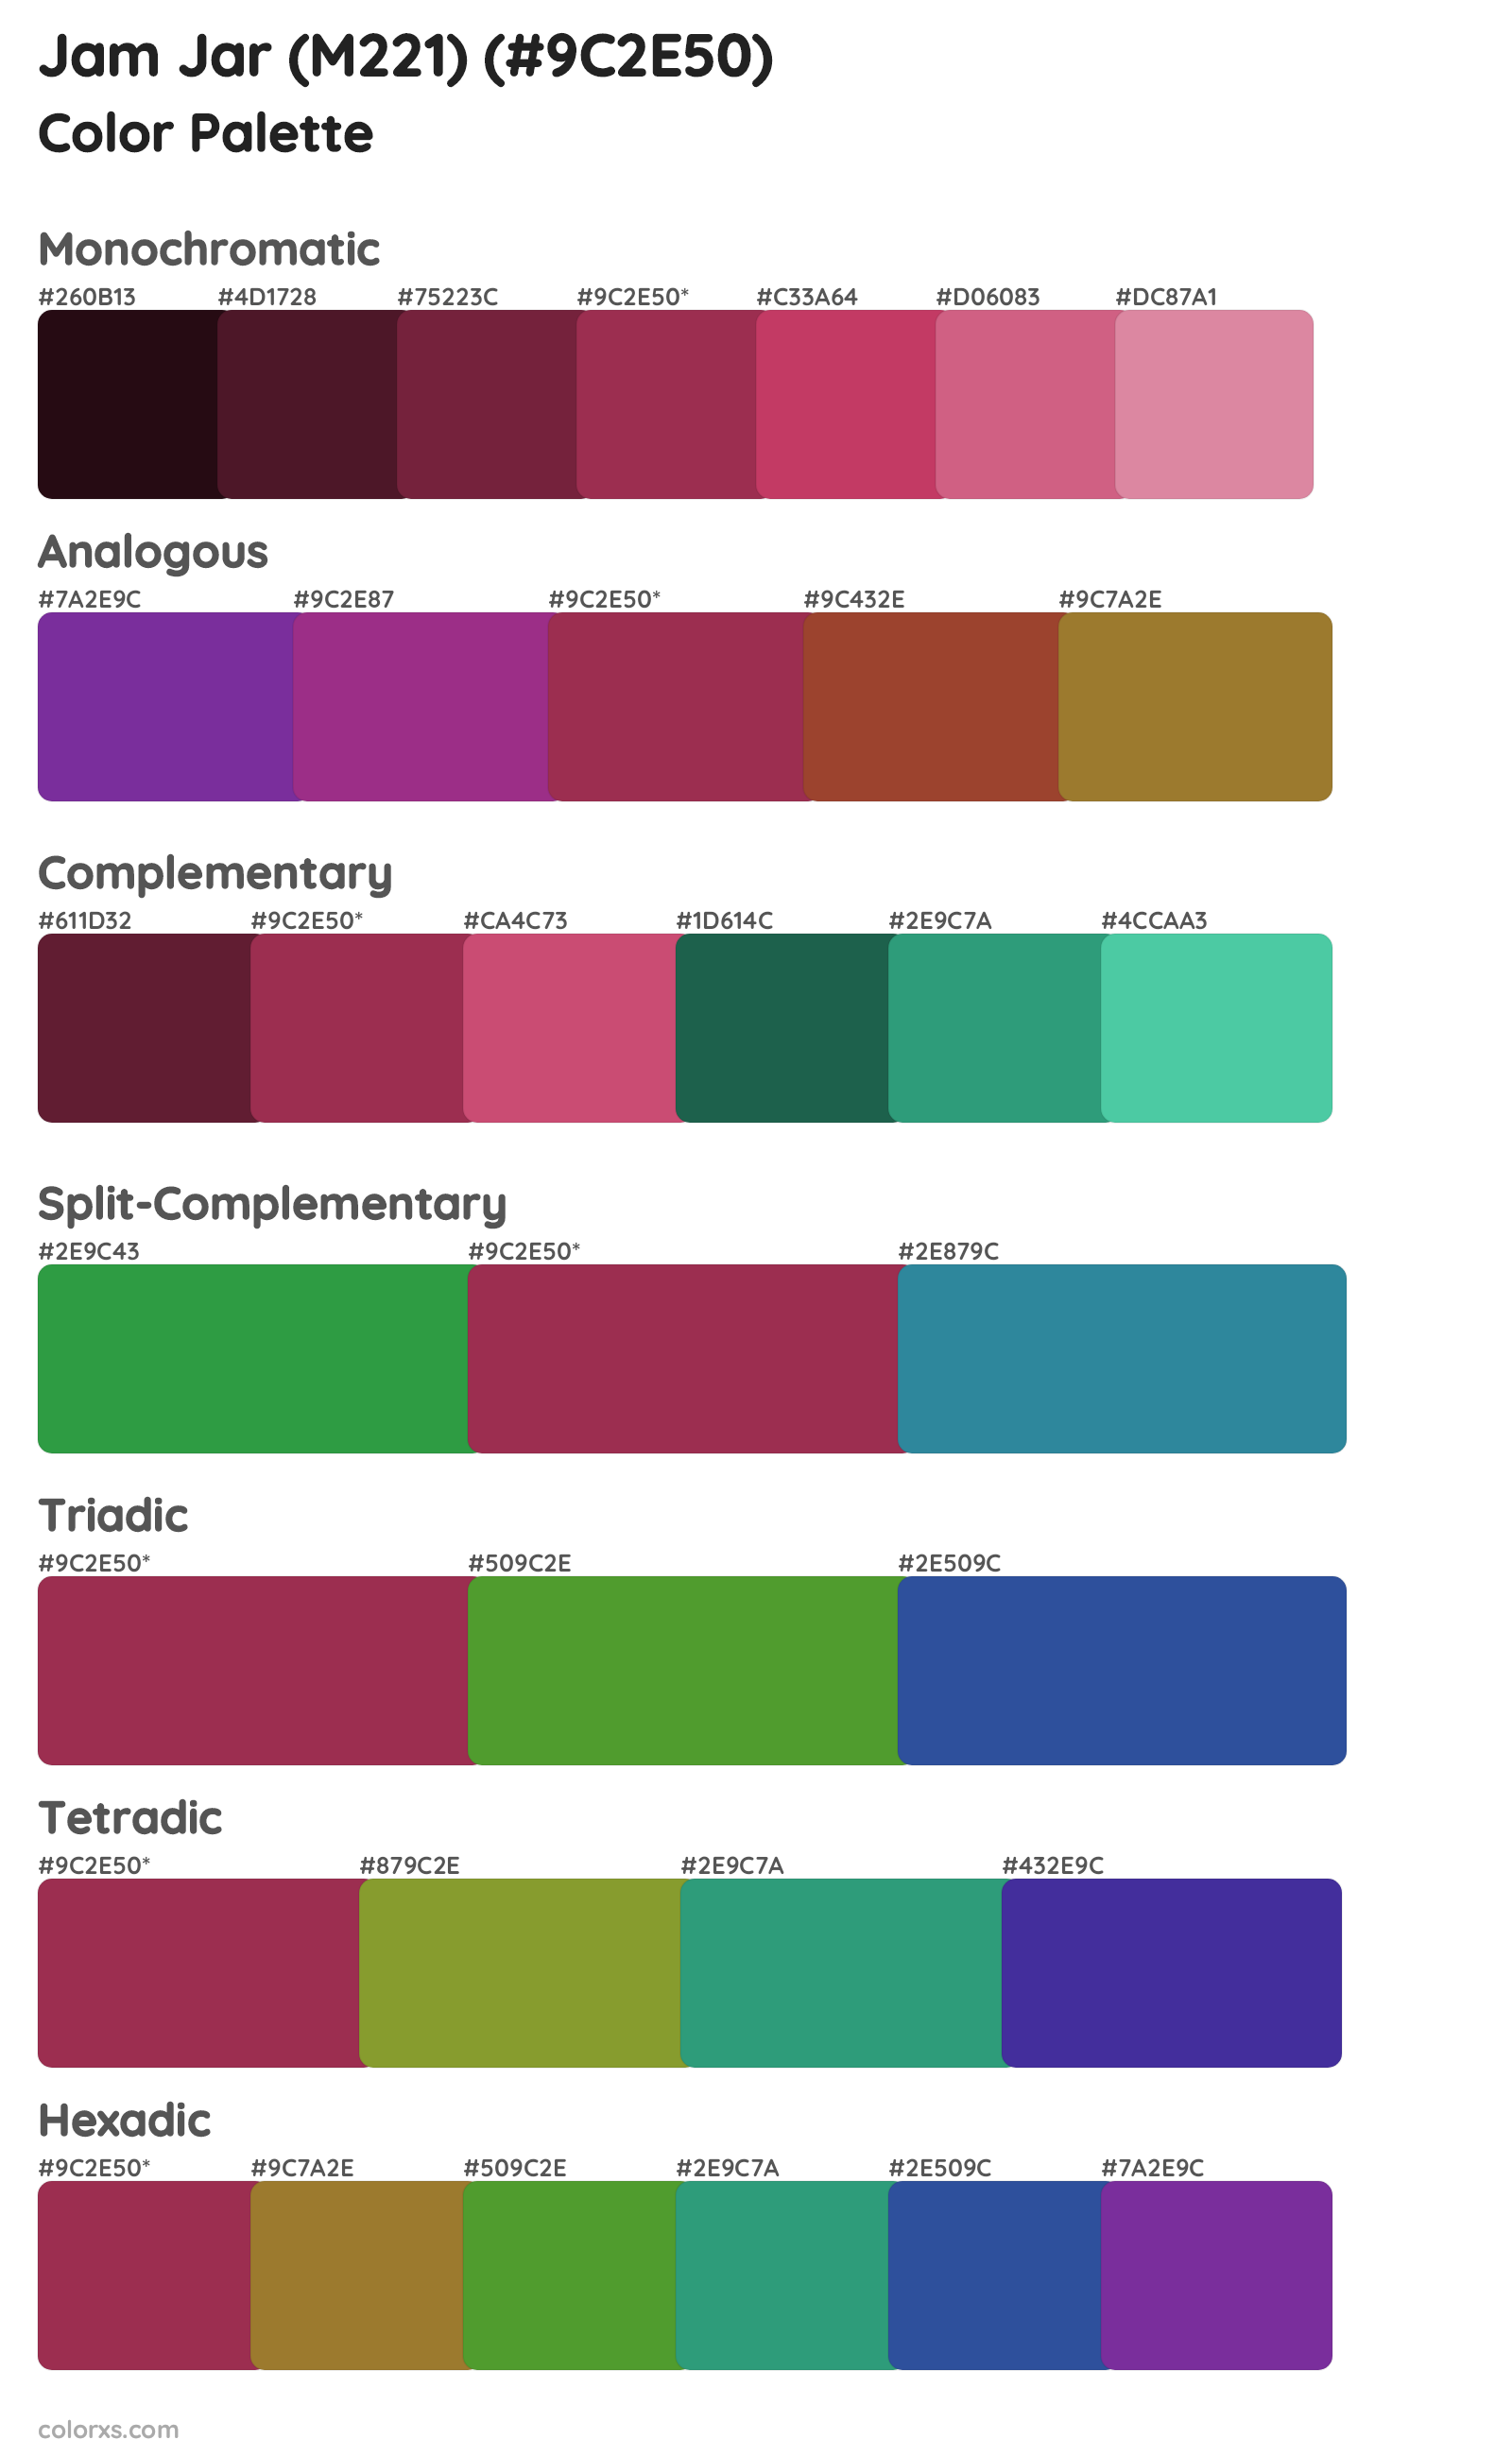 Jam Jar (M221) Color Scheme Palettes